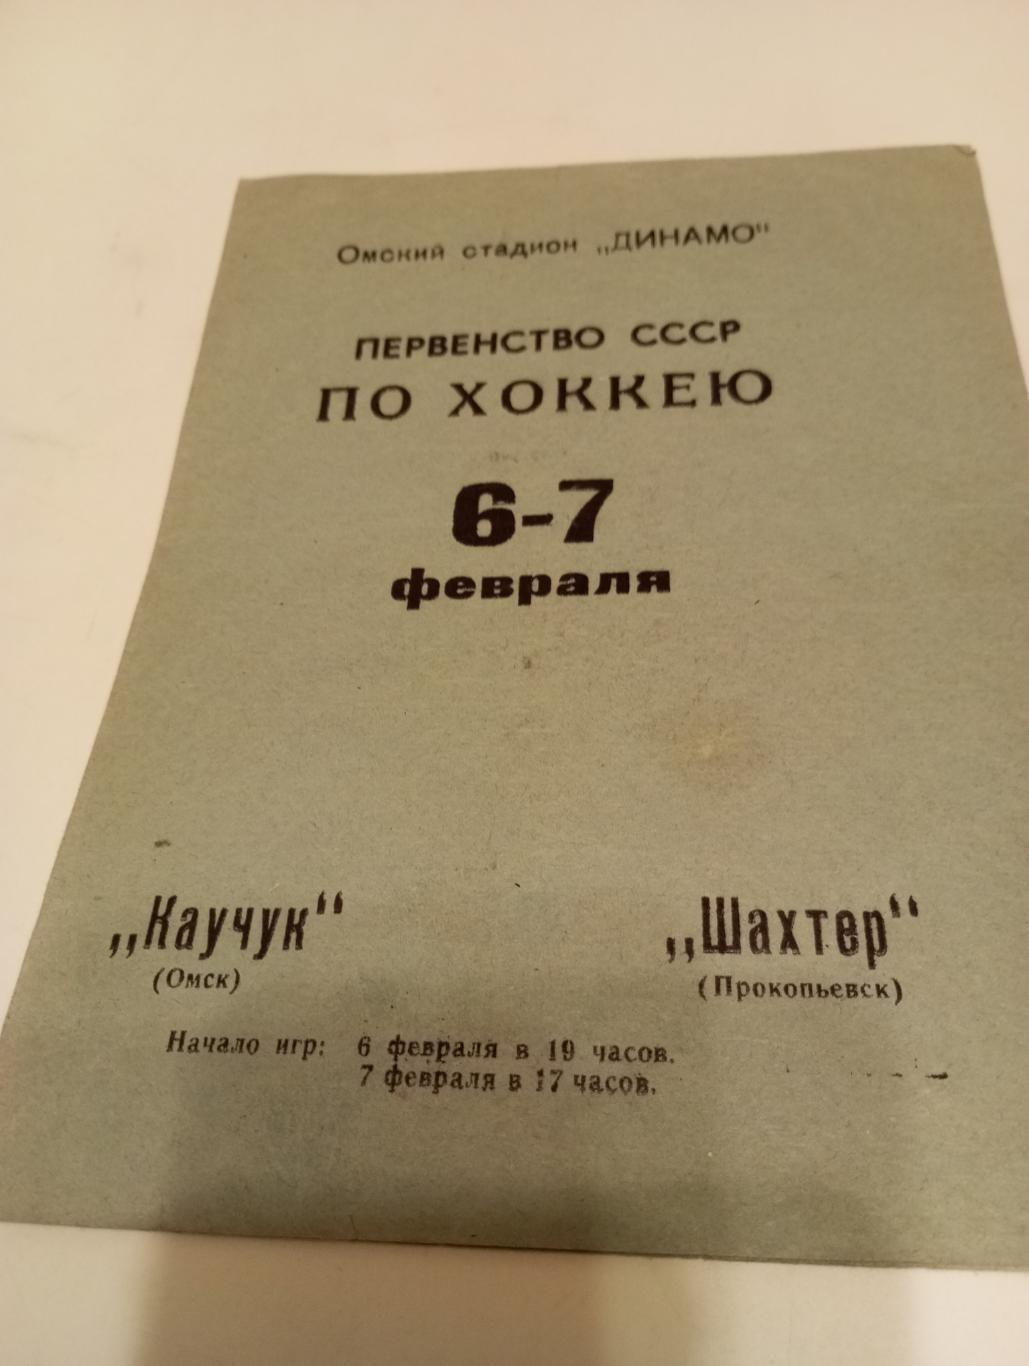 Каучук(Омск) - Шахтёр (Прокопьевск).6/7.02.1971..